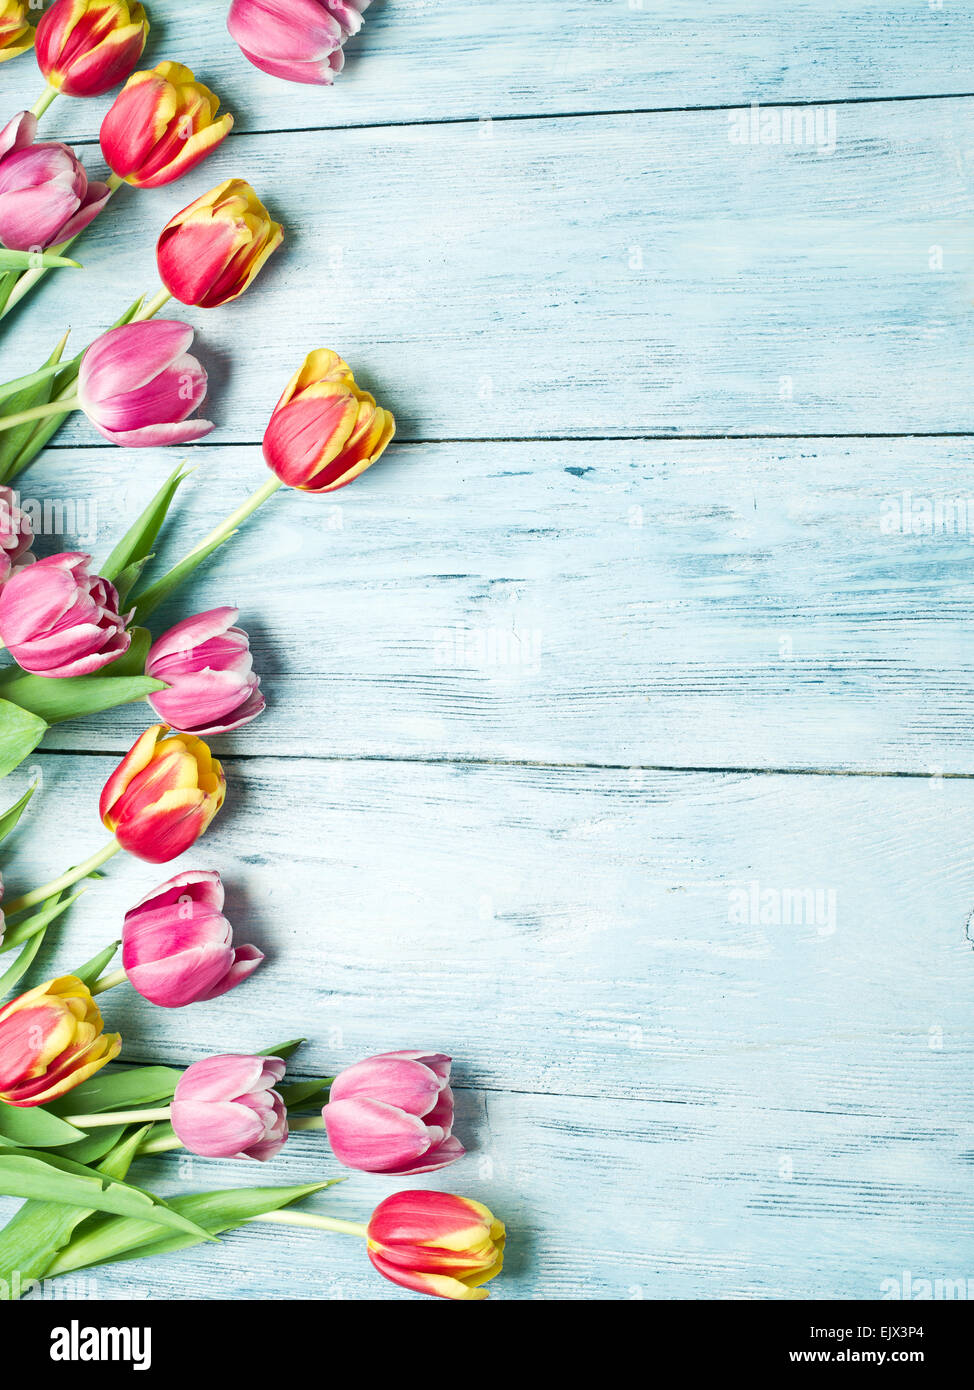 Rosa y tulipanes rojos sobre un fondo de madera azul. Espacio para el texto. Foto de stock